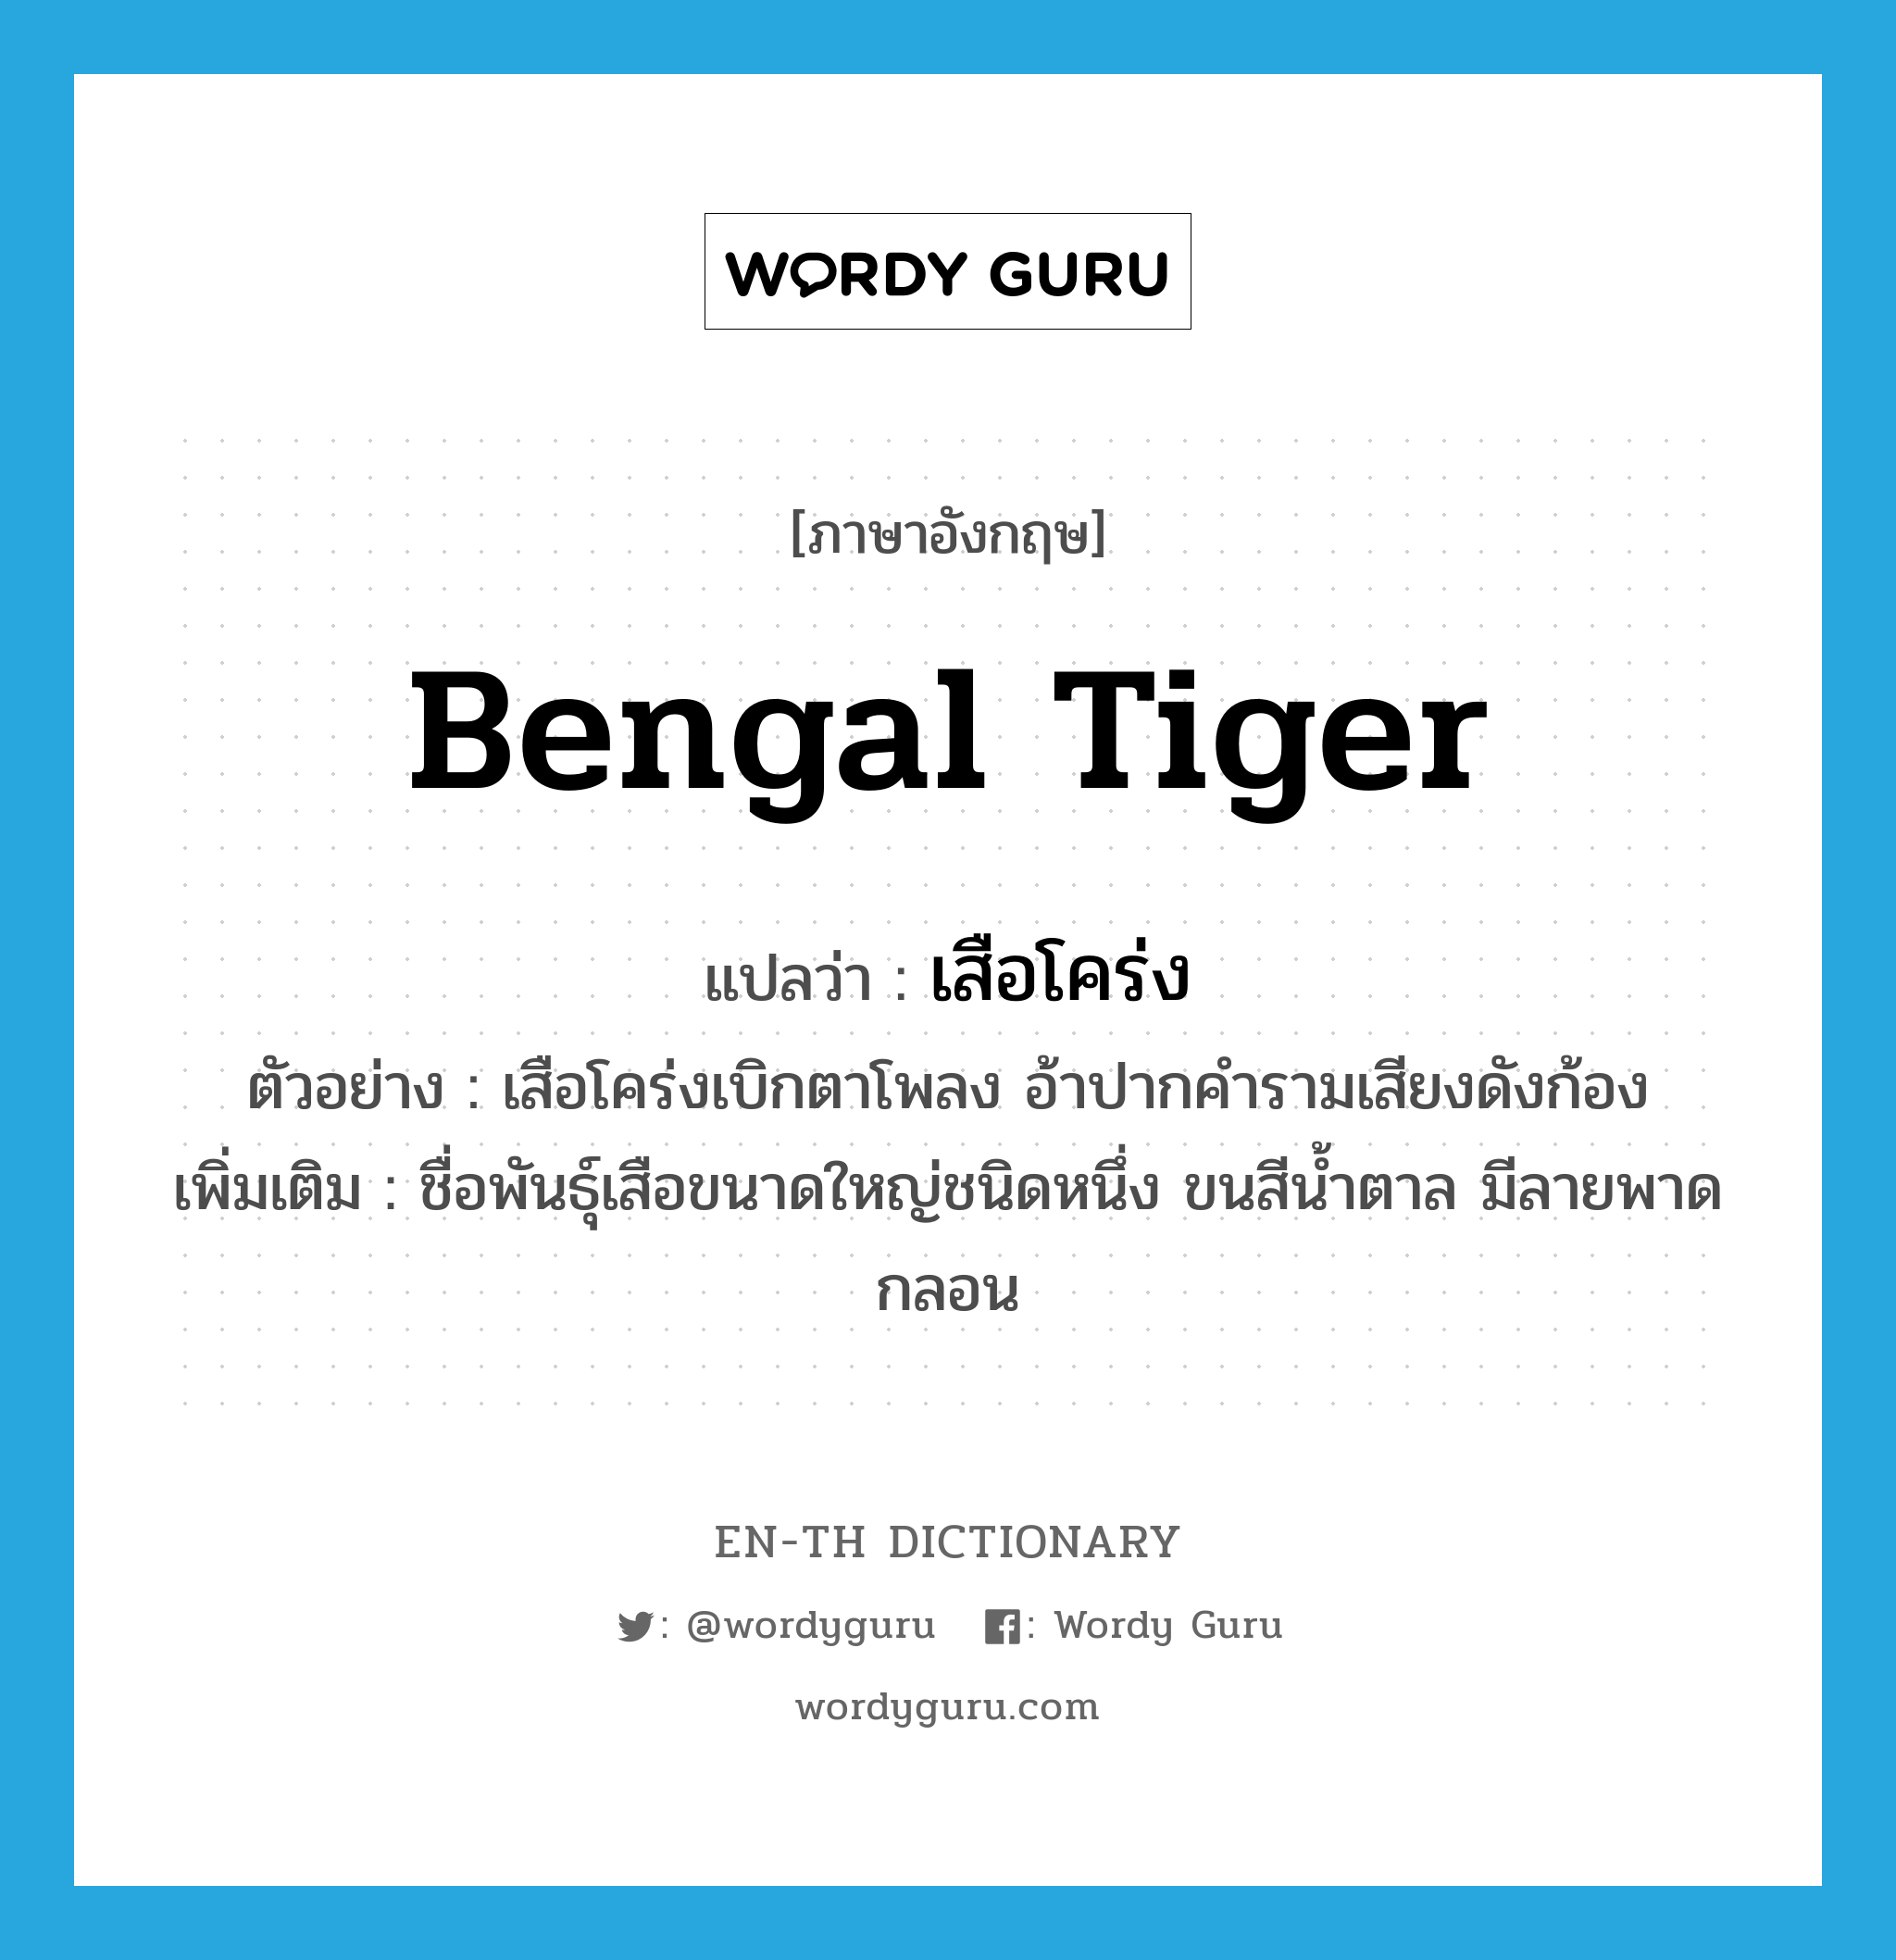 Bengal tiger แปลว่า?, คำศัพท์ภาษาอังกฤษ Bengal tiger แปลว่า เสือโคร่ง ประเภท N ตัวอย่าง เสือโคร่งเบิกตาโพลง อ้าปากคำรามเสียงดังก้อง เพิ่มเติม ชื่อพันธุ์เสือขนาดใหญ่ชนิดหนึ่ง ขนสีน้ำตาล มีลายพาดกลอน หมวด N